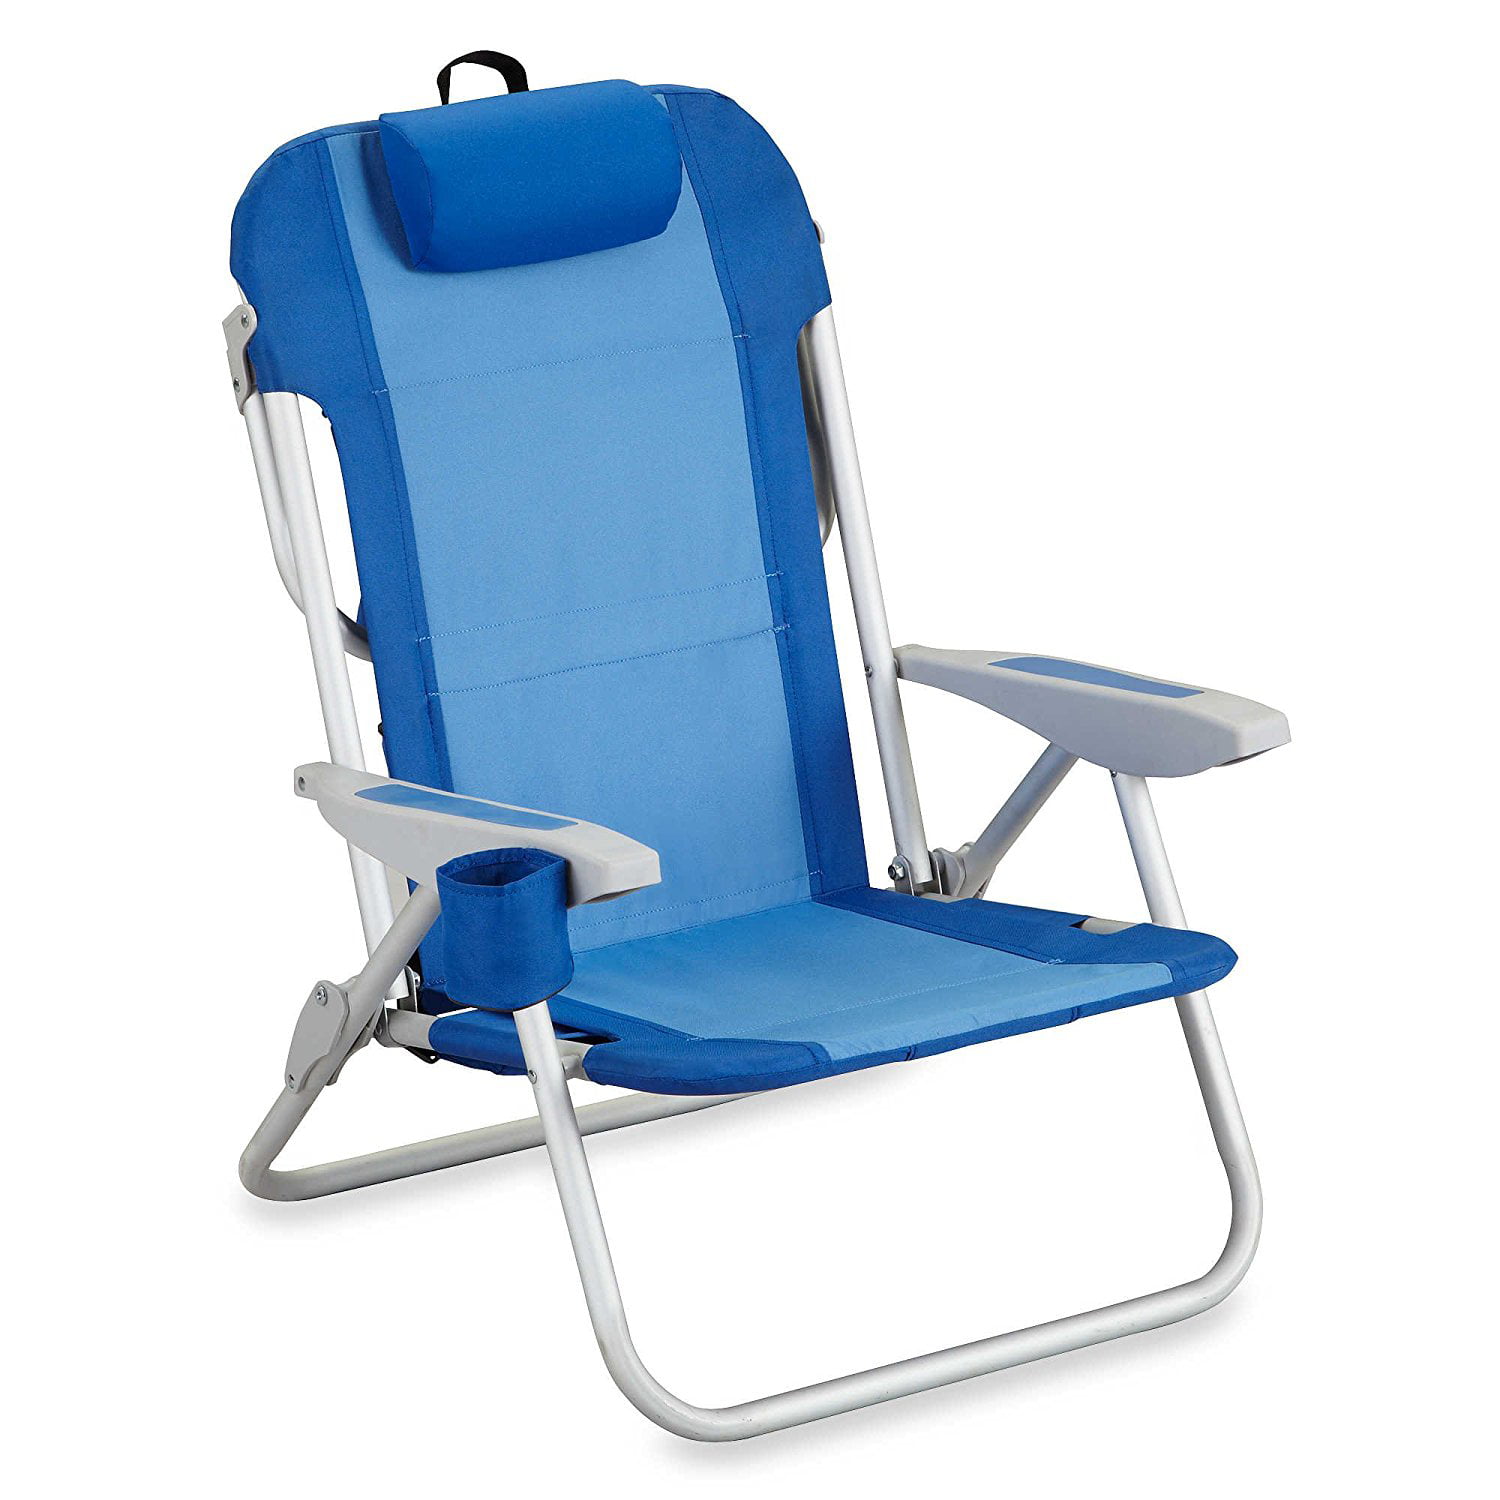 Iop chair beach store